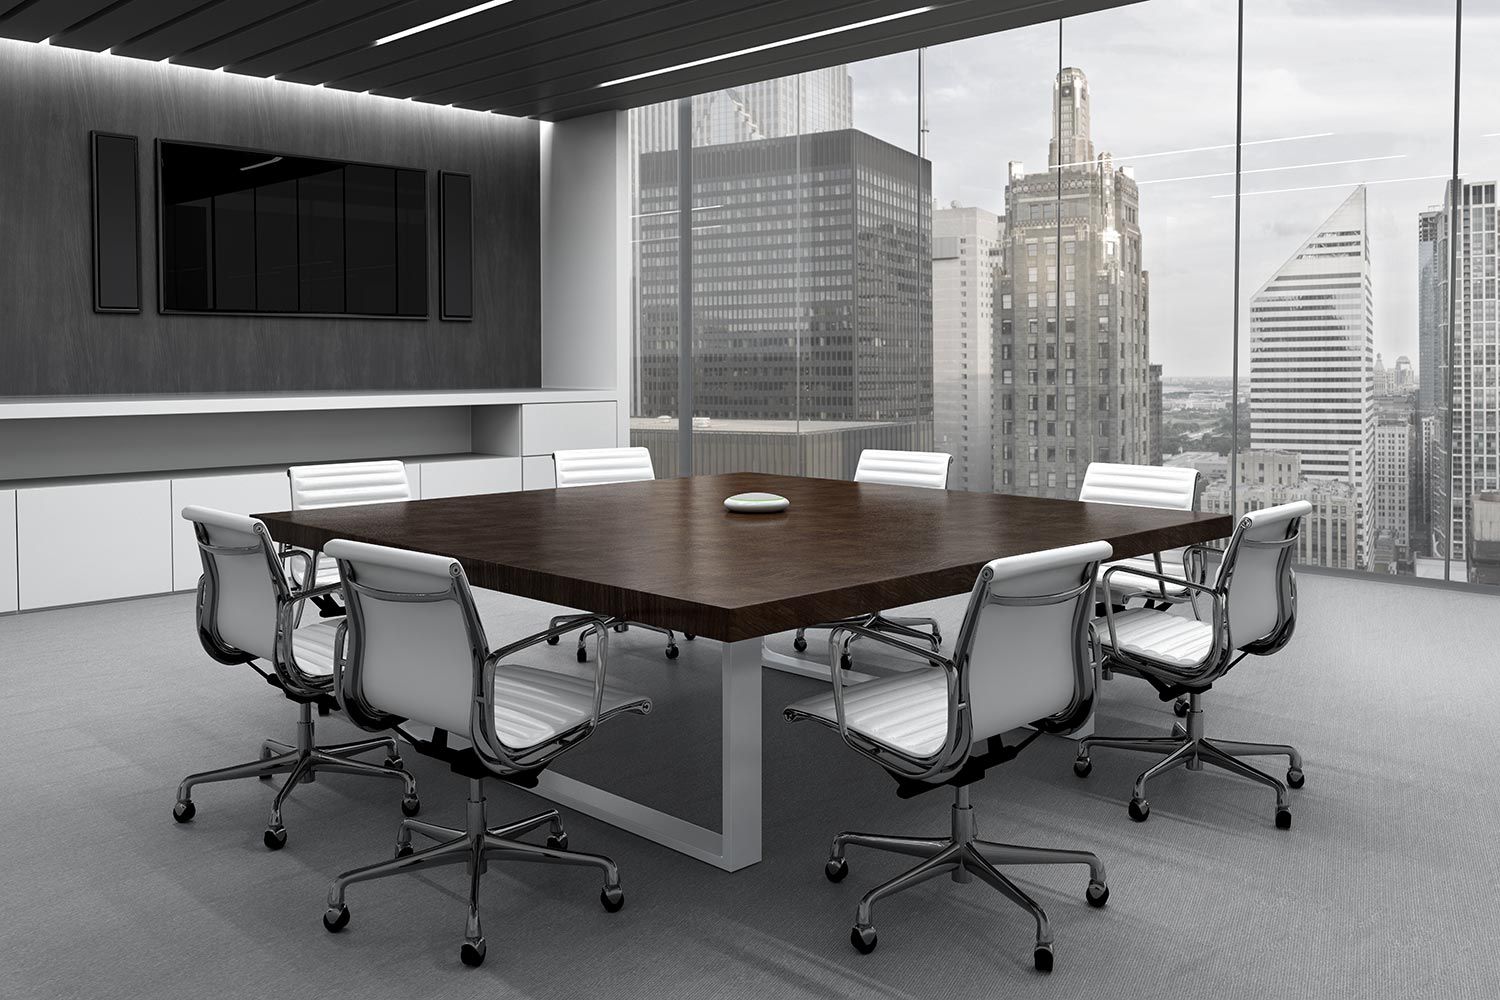 Dark conference room in grey tones